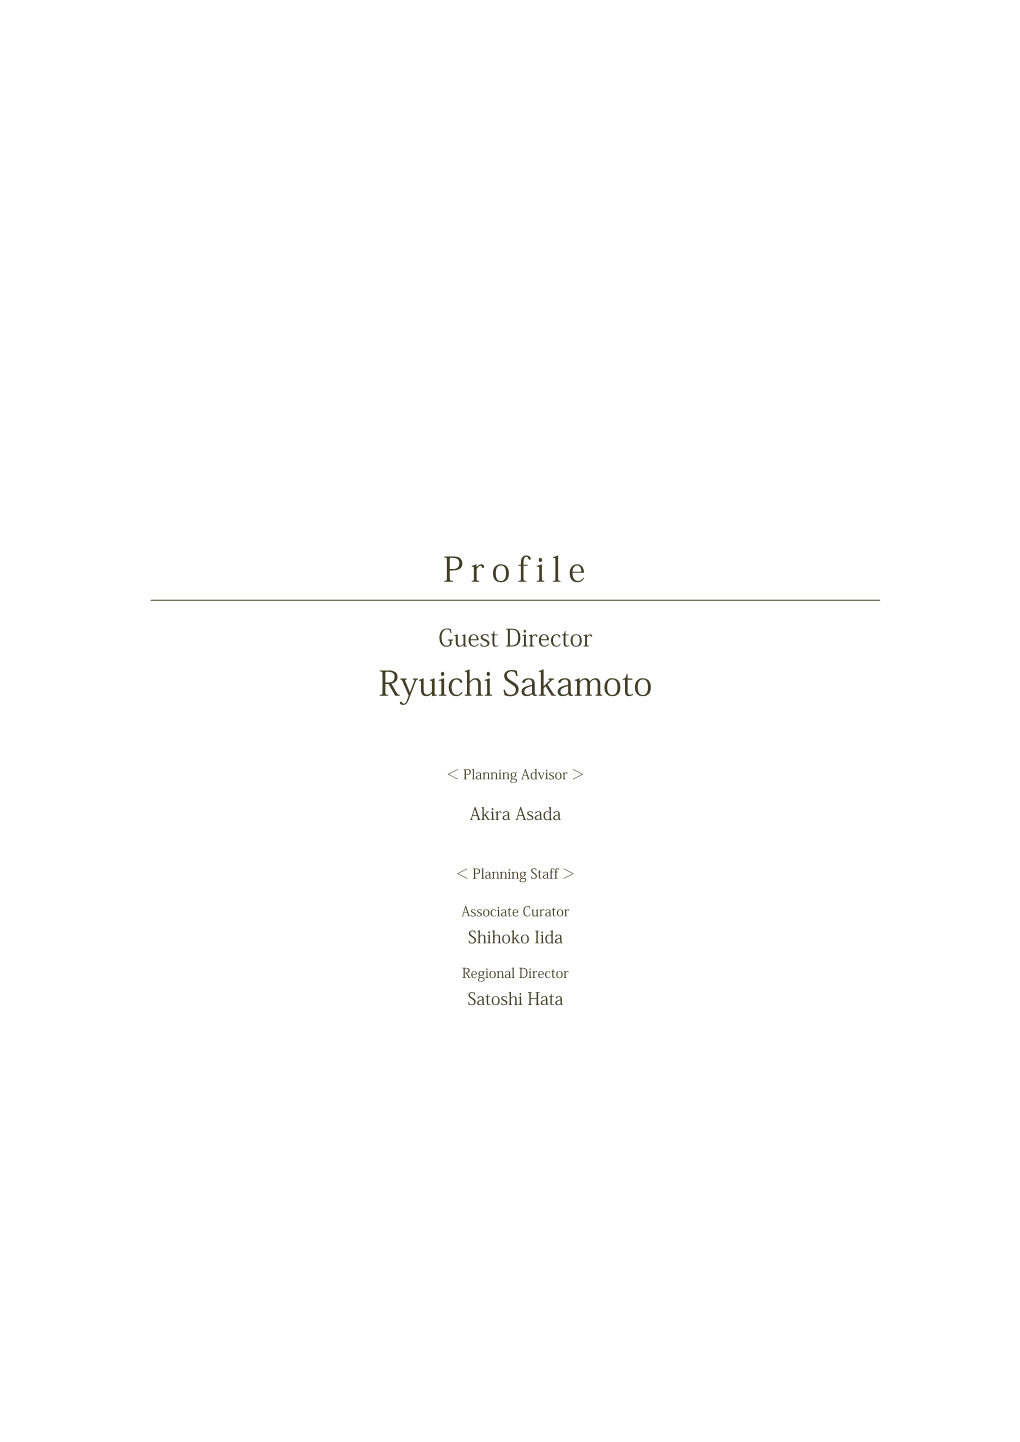 Ryuichi Sakamoto P R O F I